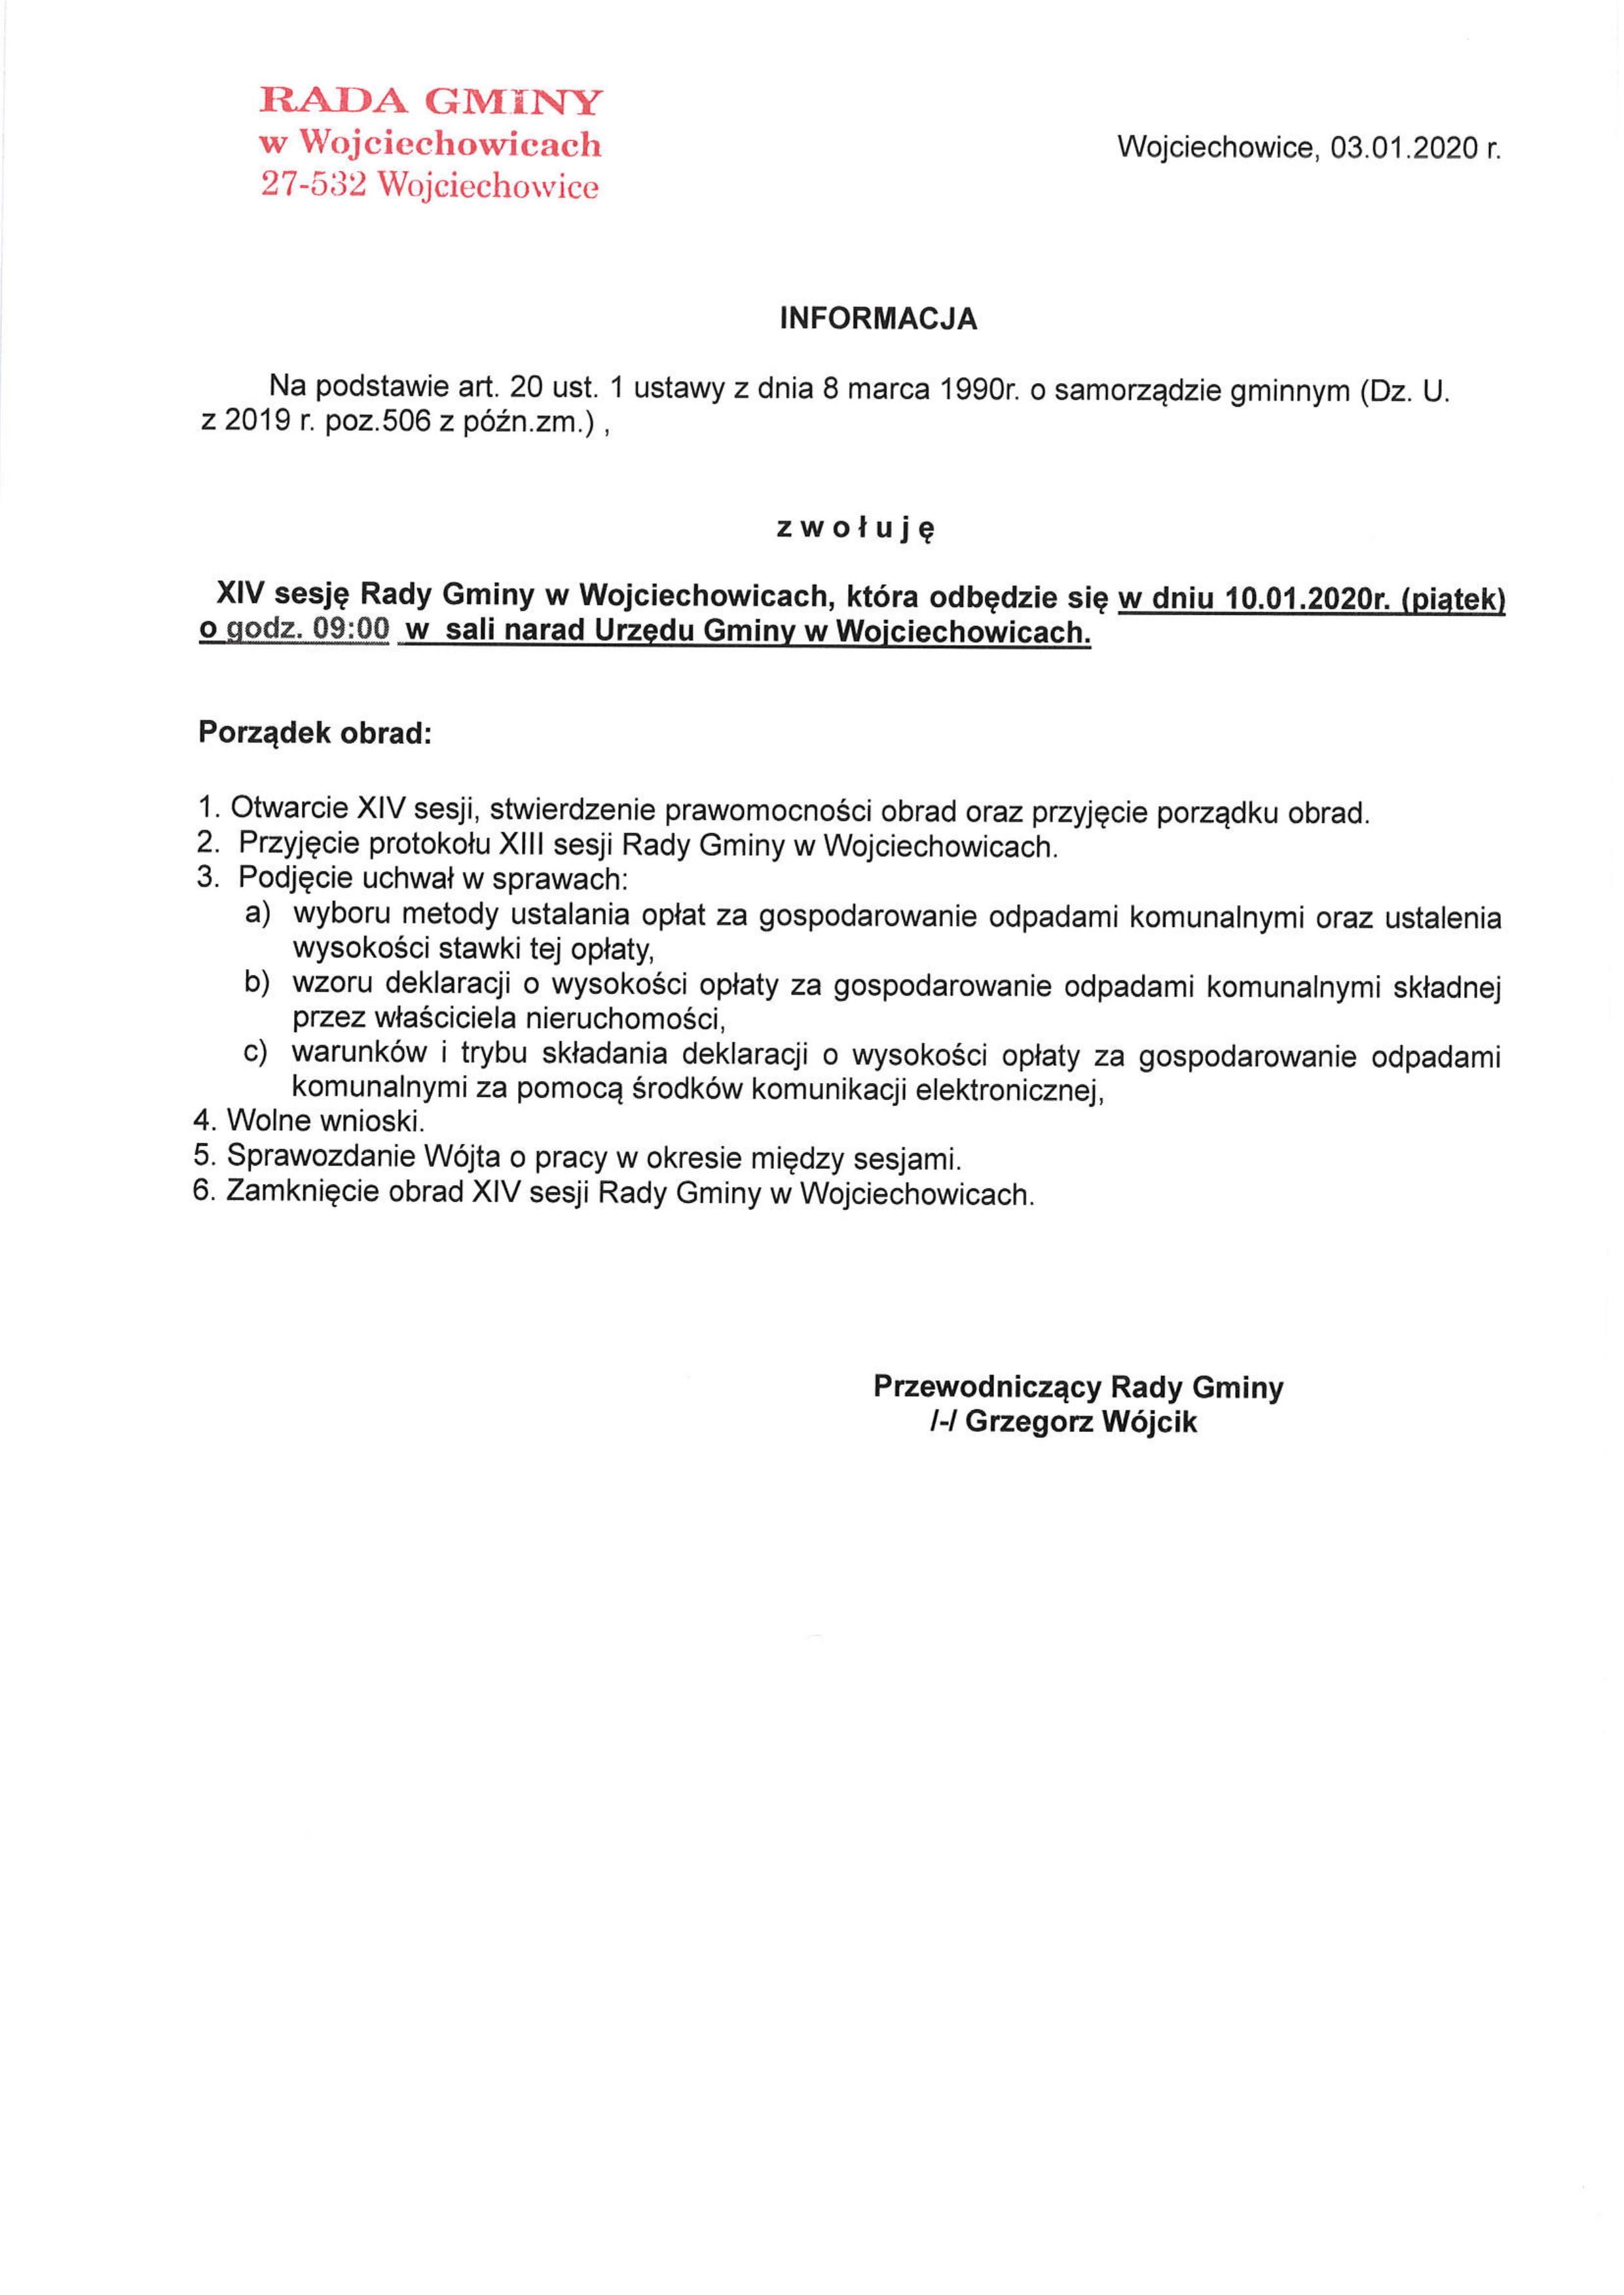 Informacja - XIV sesja Rady Gminy Wojciechowice